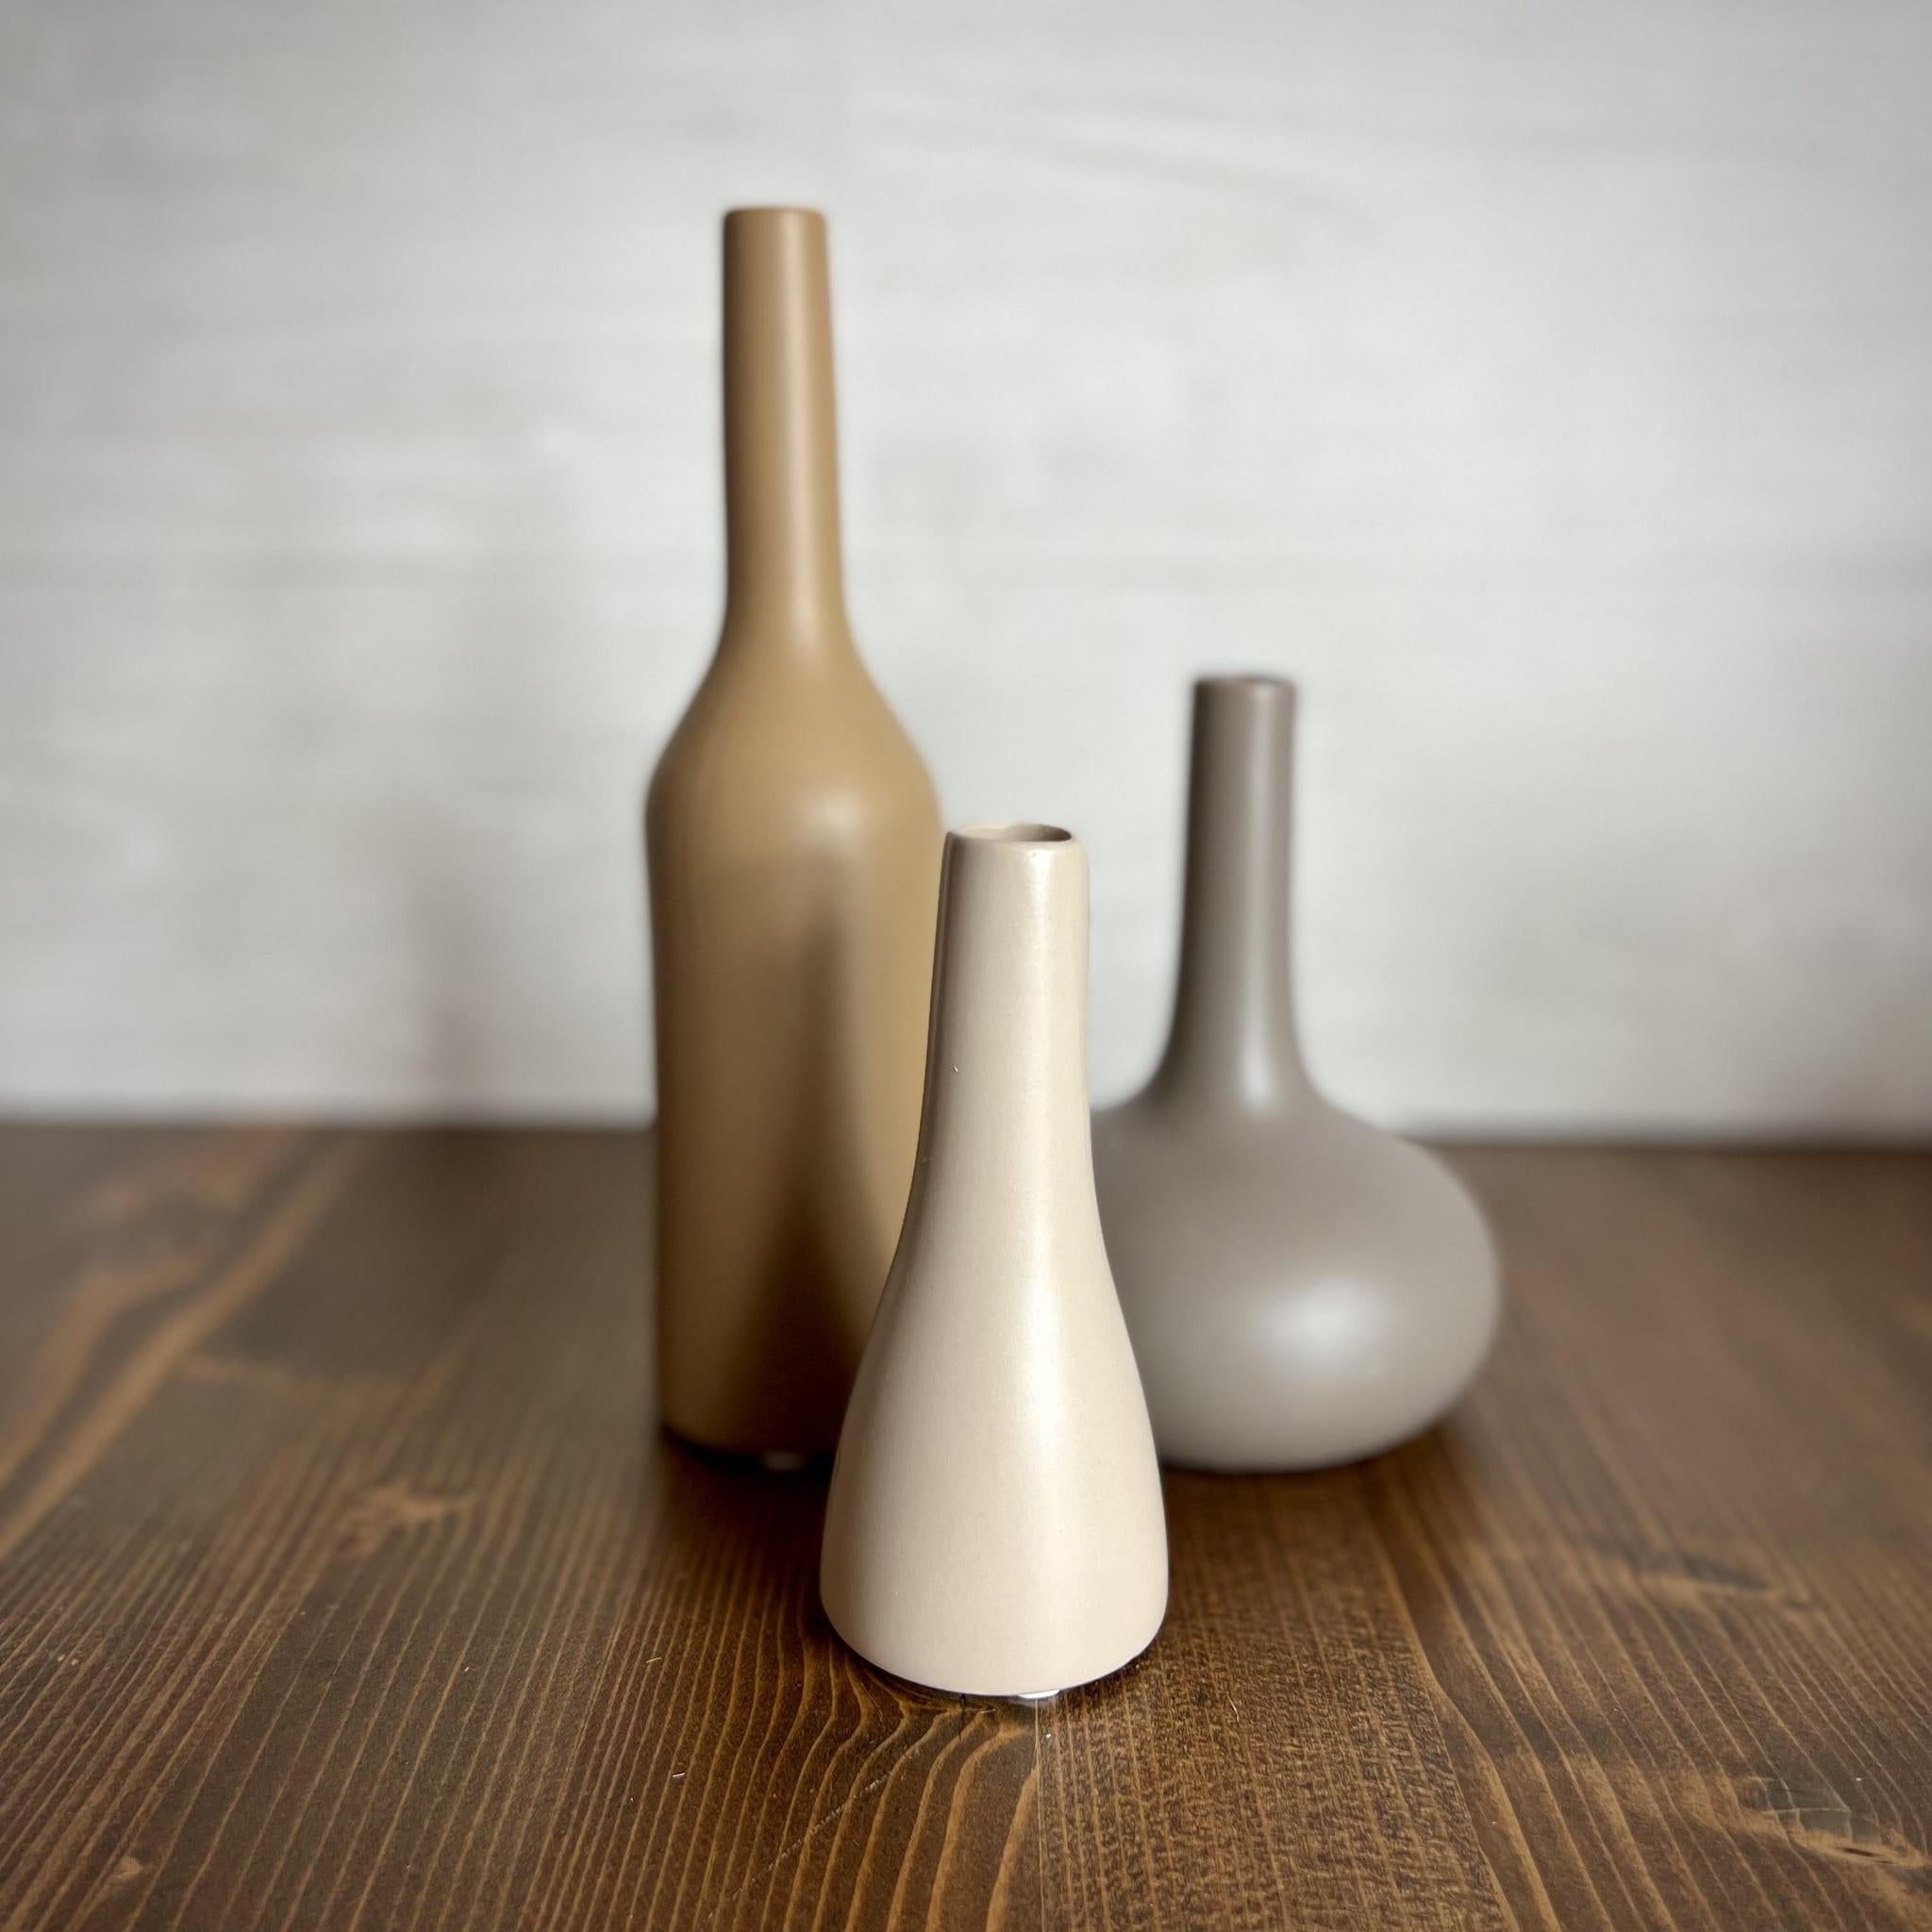 Gray Ceramic Eastern Bottle Vase - 6"H